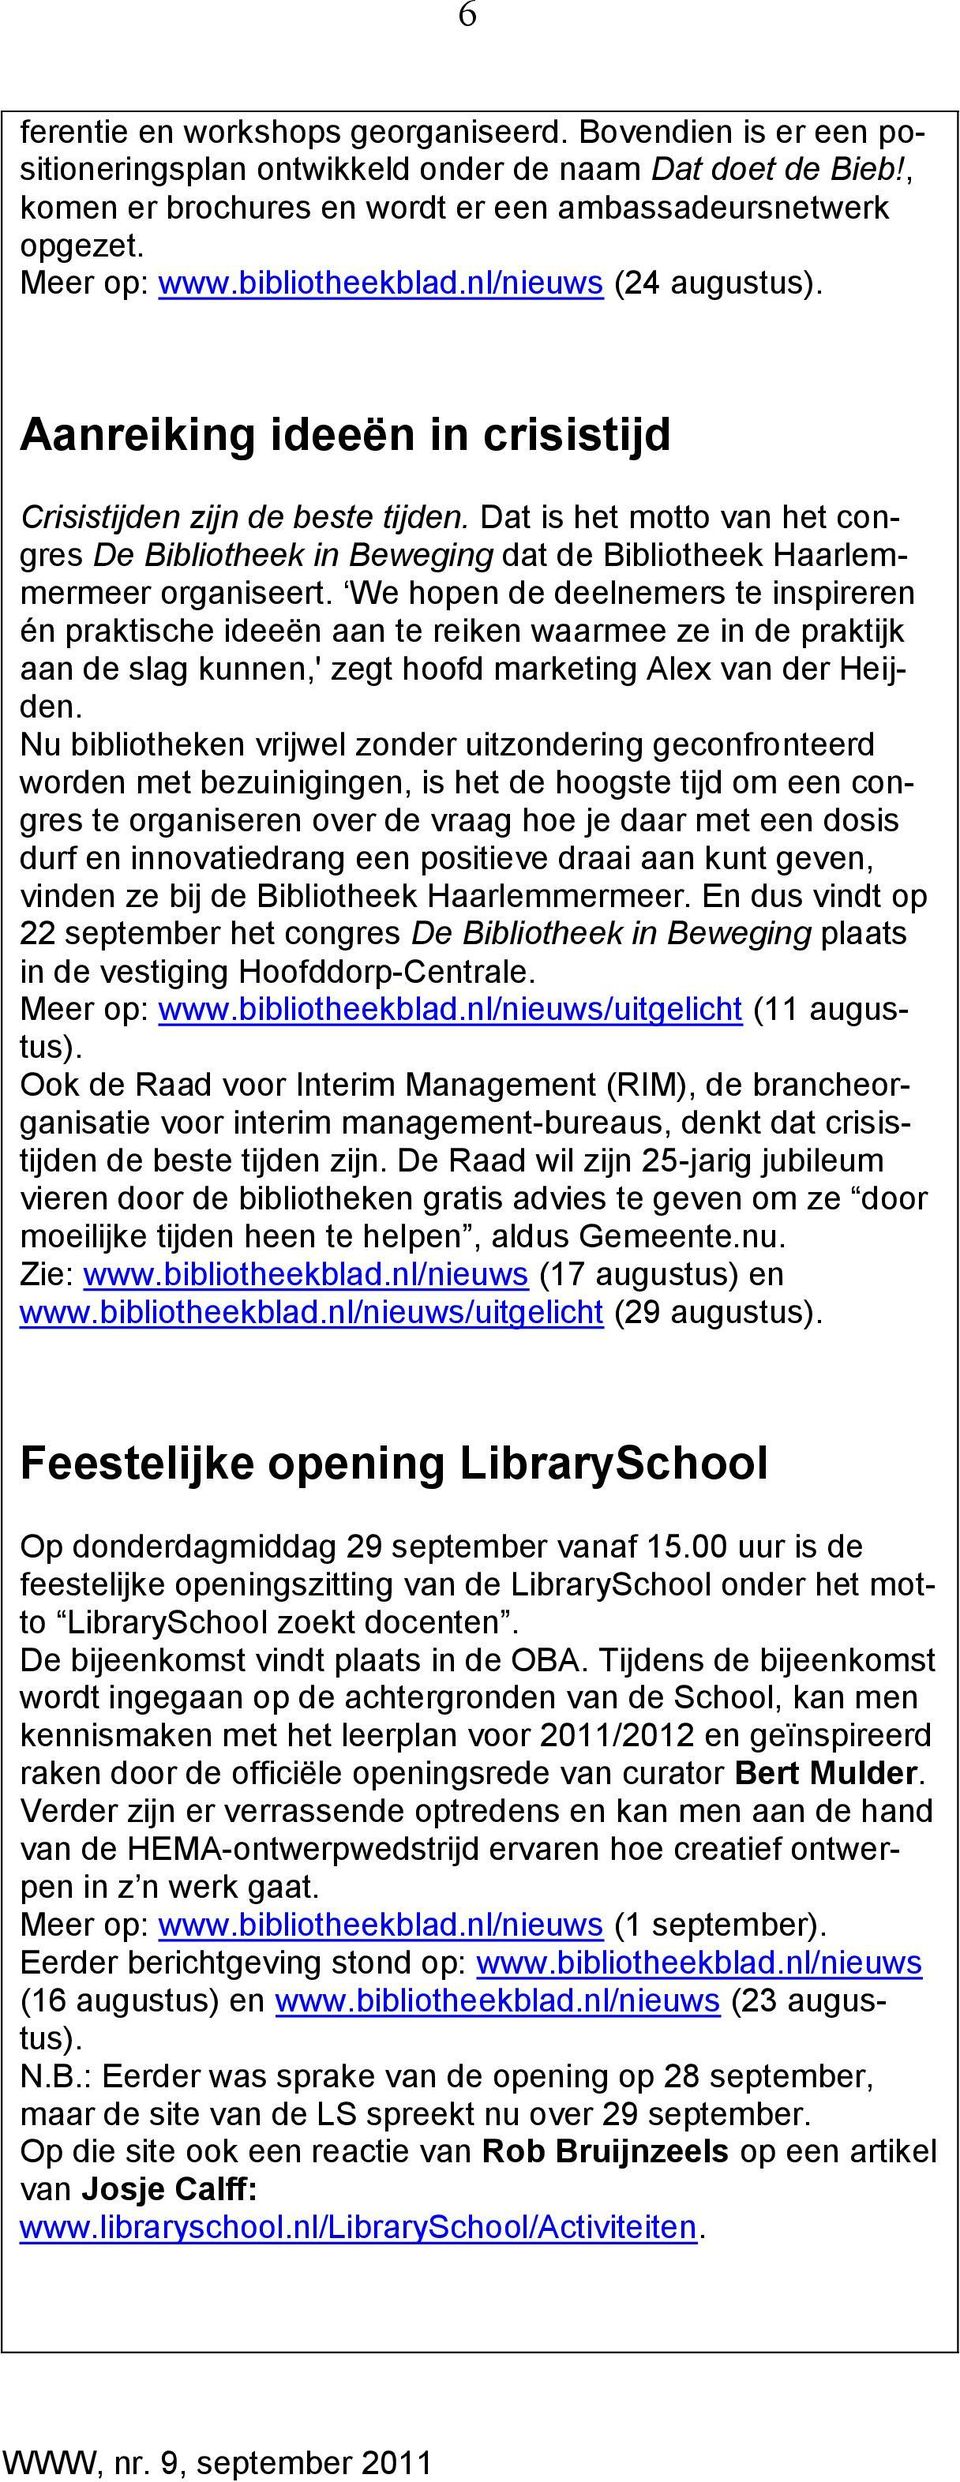 Dat is het motto van het congres De Bibliotheek in Beweging dat de Bibliotheek Haarlemmermeer organiseert.